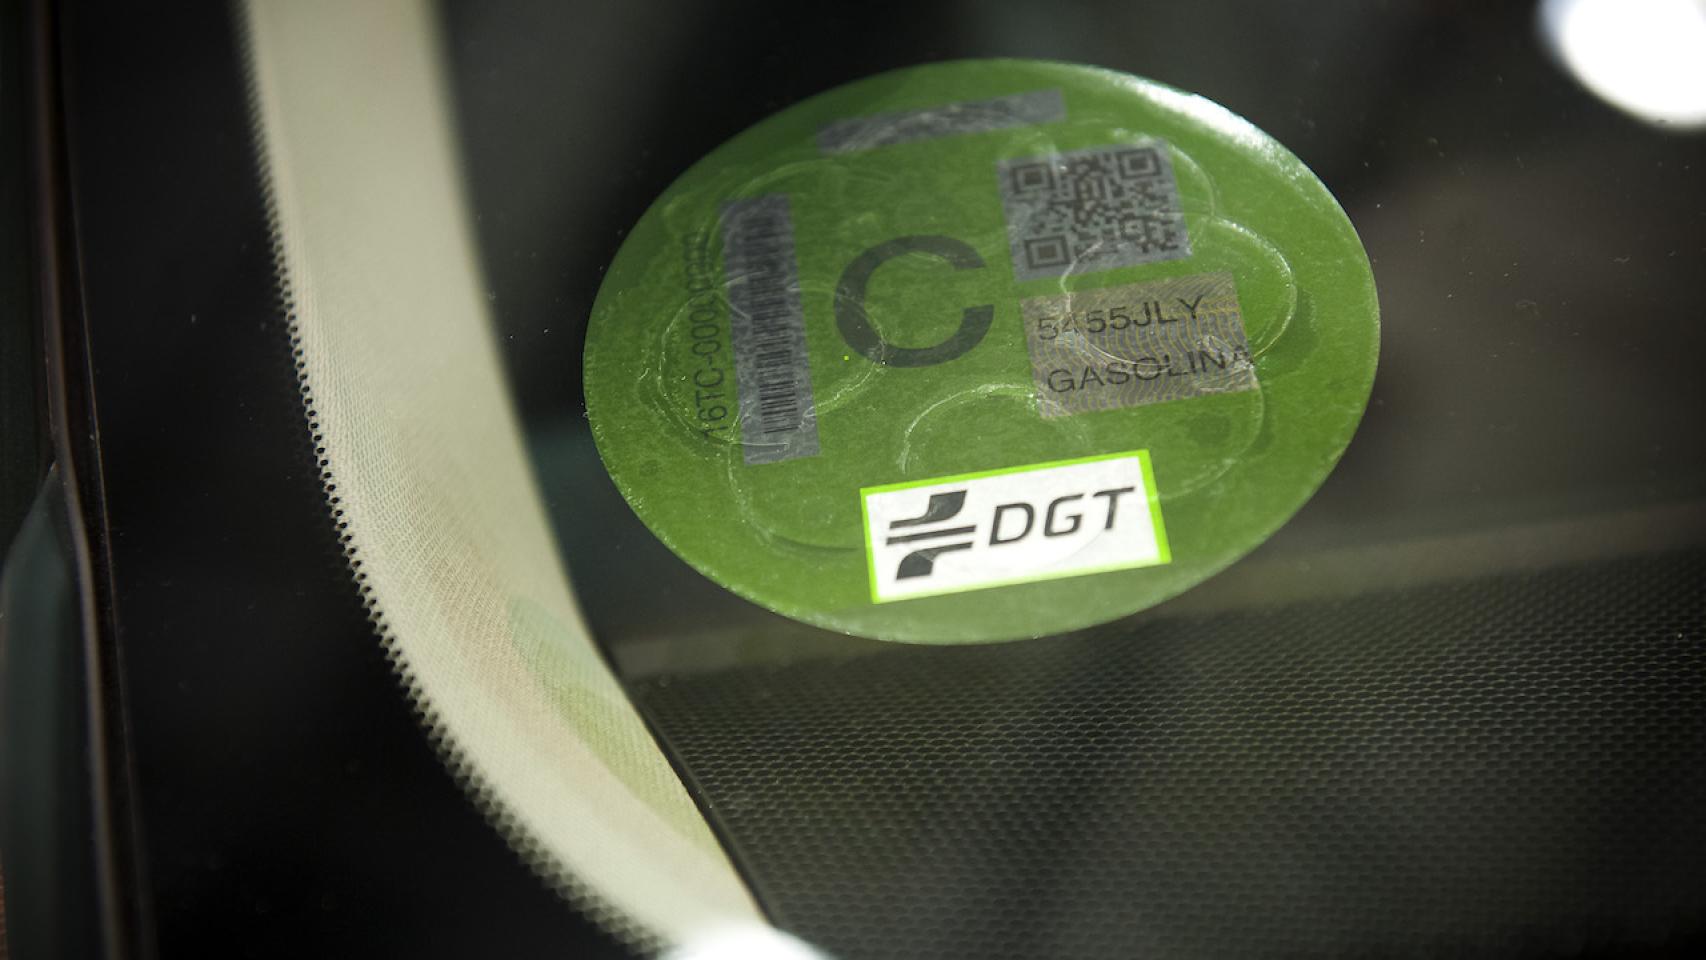 La DGT comienza a vender las etiquetas medioambientales a 5 euros